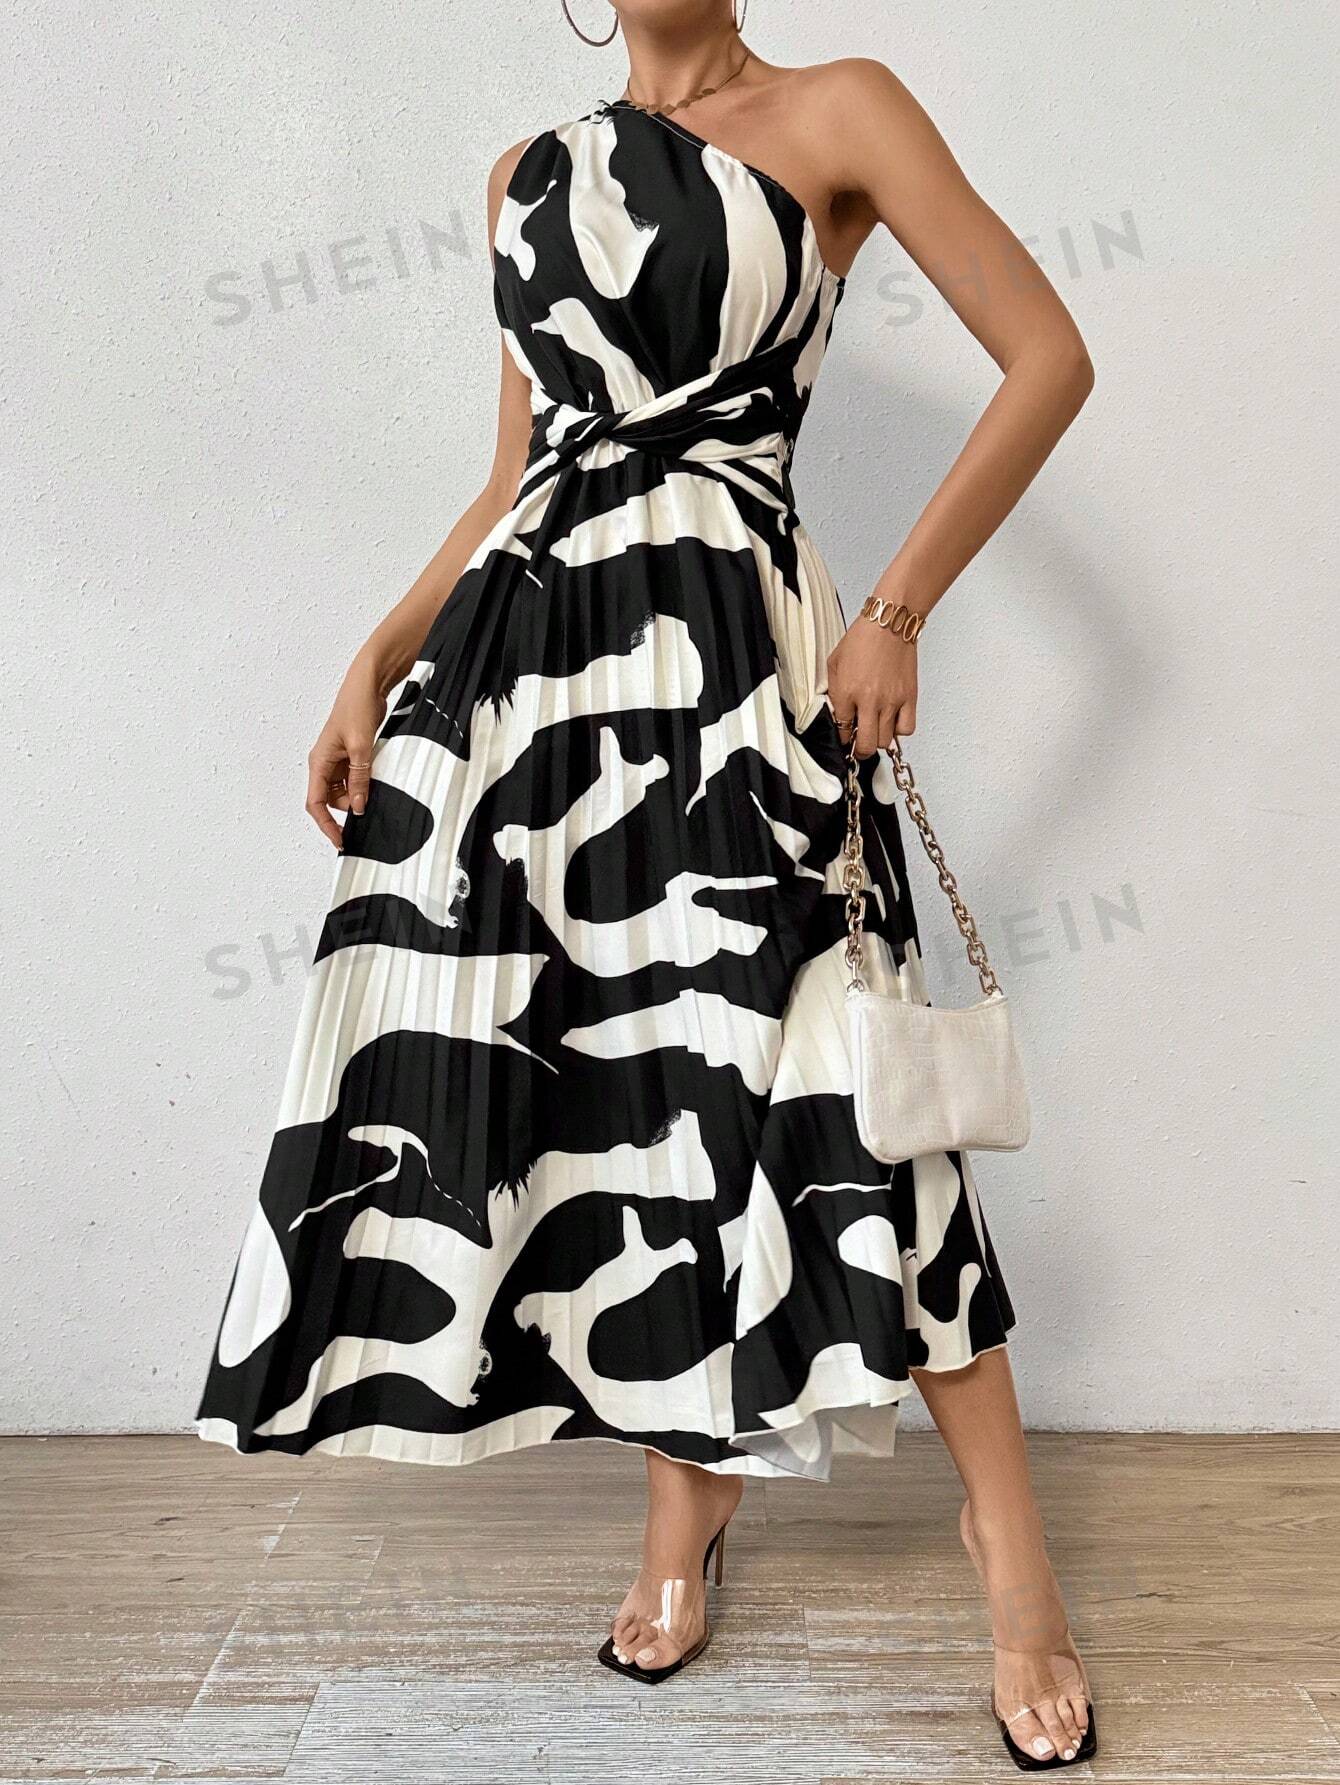 SHEIN Privé Женское платье без рукавов на одно плечо с принтом и плиссированным подолом, черное и белое фото